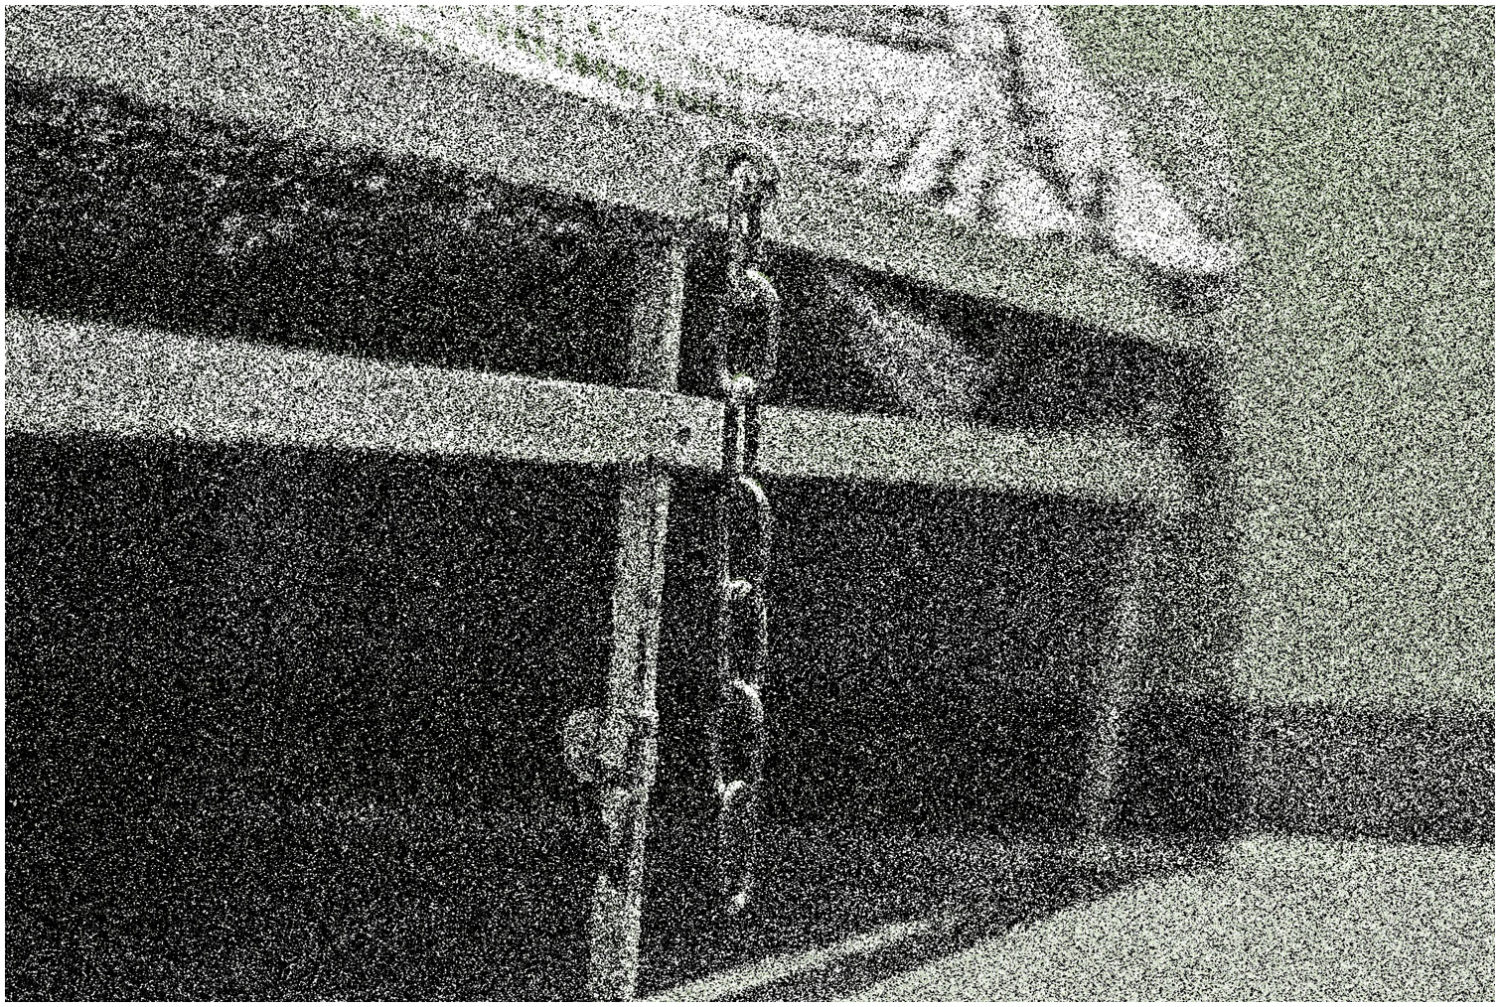 Raum mit Bett, an dem eine am Bettrahmen angeschraubte Kette zum Anketten von Gefangenen hängt, gobkörnig verfremdet.